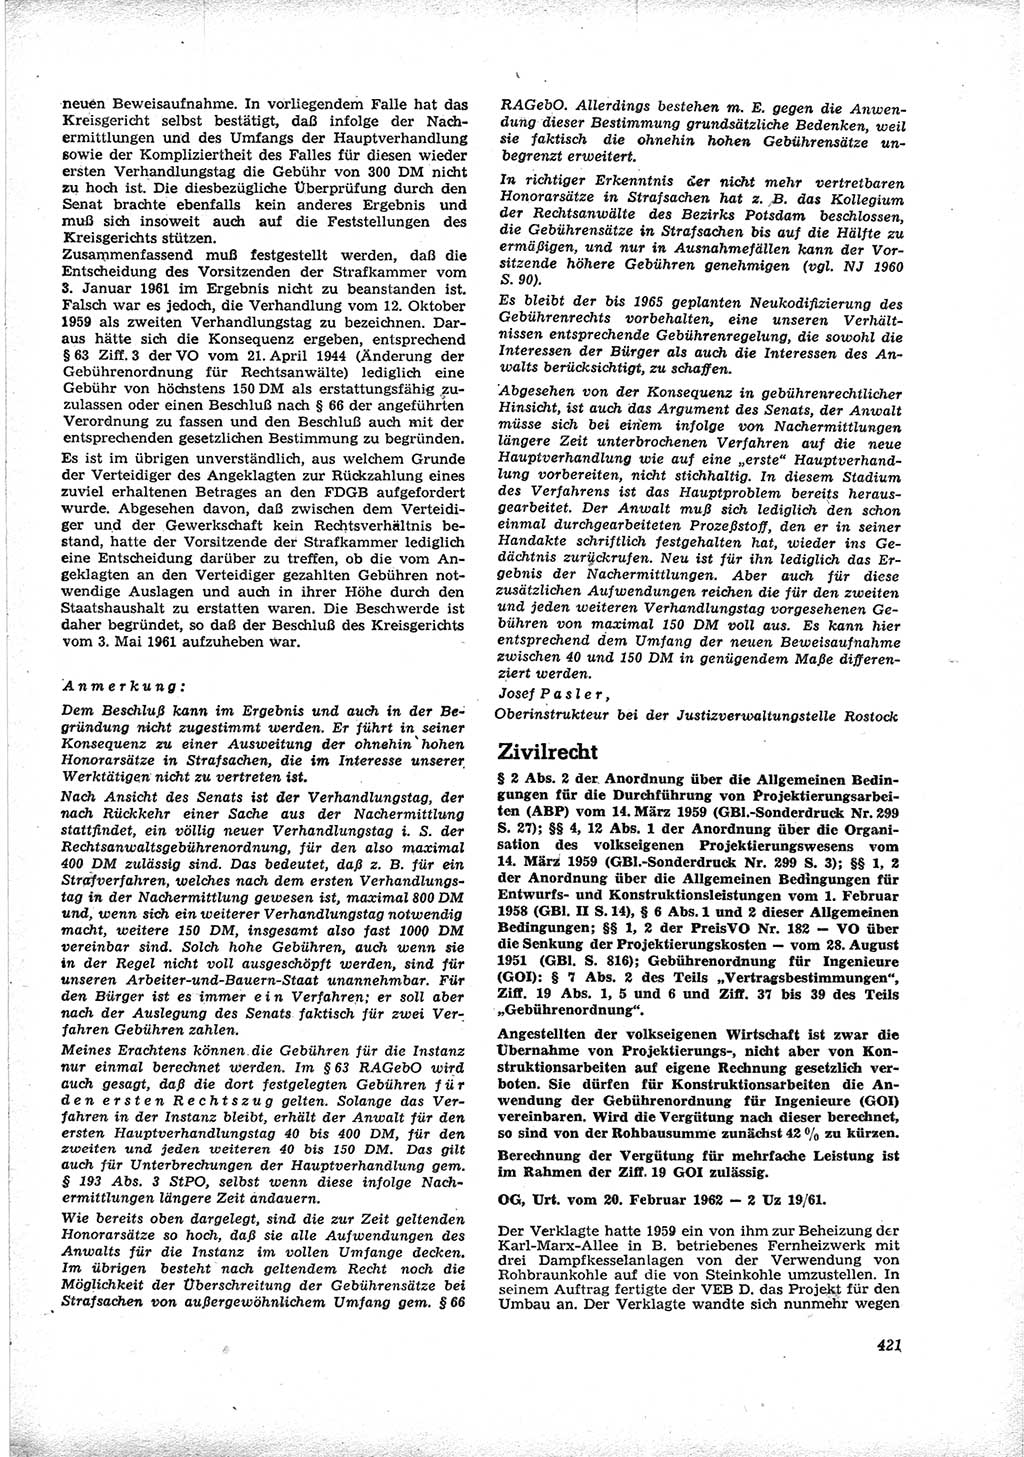 Neue Justiz (NJ), Zeitschrift für Recht und Rechtswissenschaft [Deutsche Demokratische Republik (DDR)], 16. Jahrgang 1962, Seite 421 (NJ DDR 1962, S. 421)